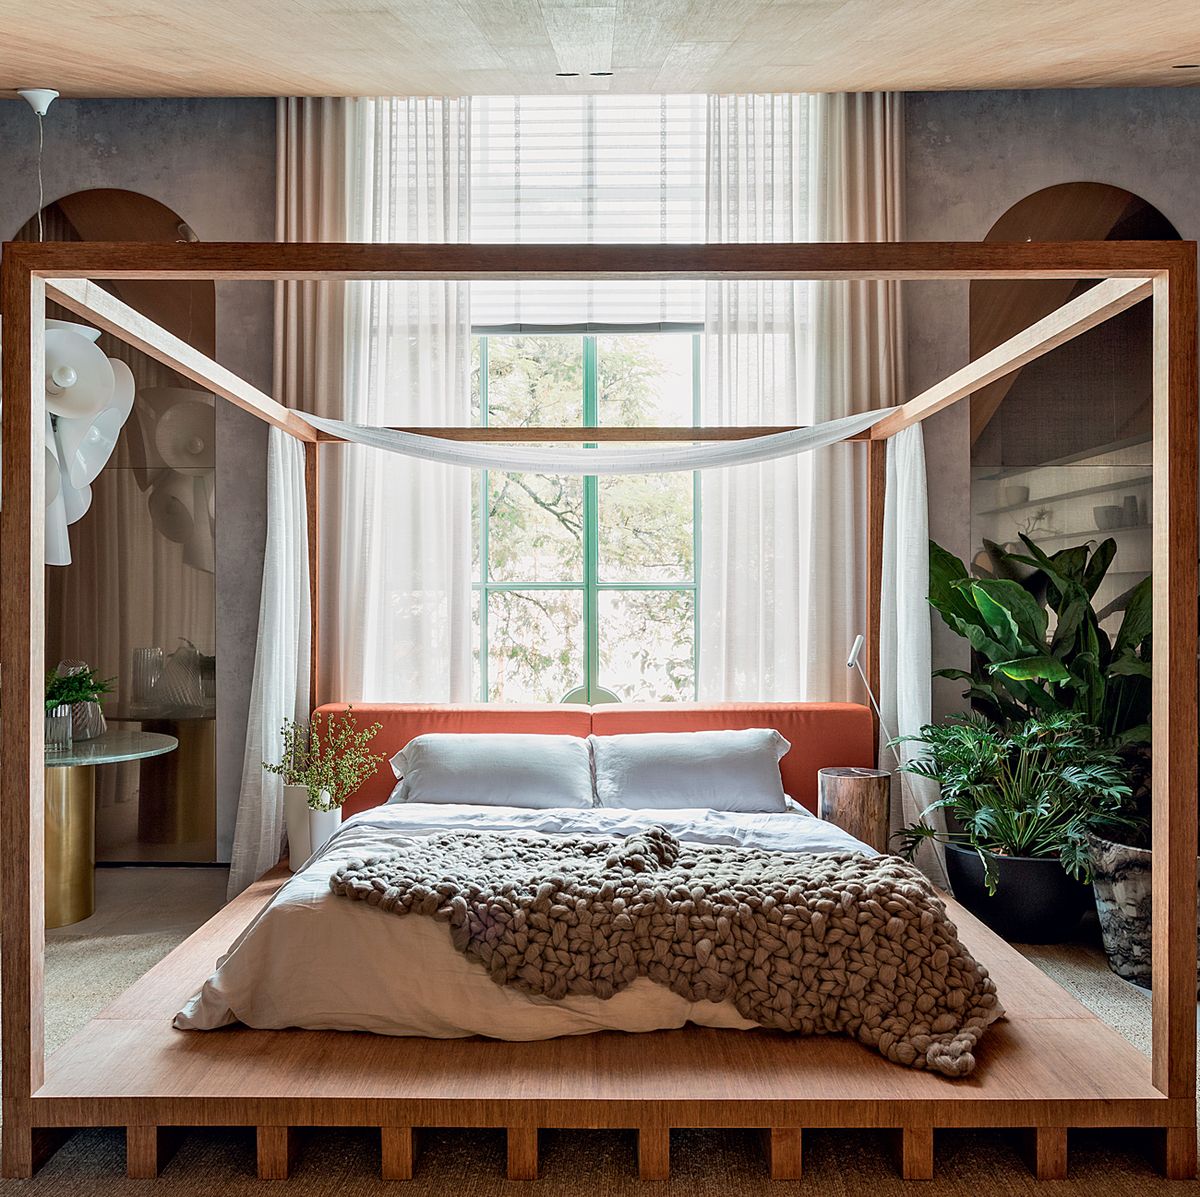 Hogar jardín dormitorio minimalista en tonos verdes y madera cama